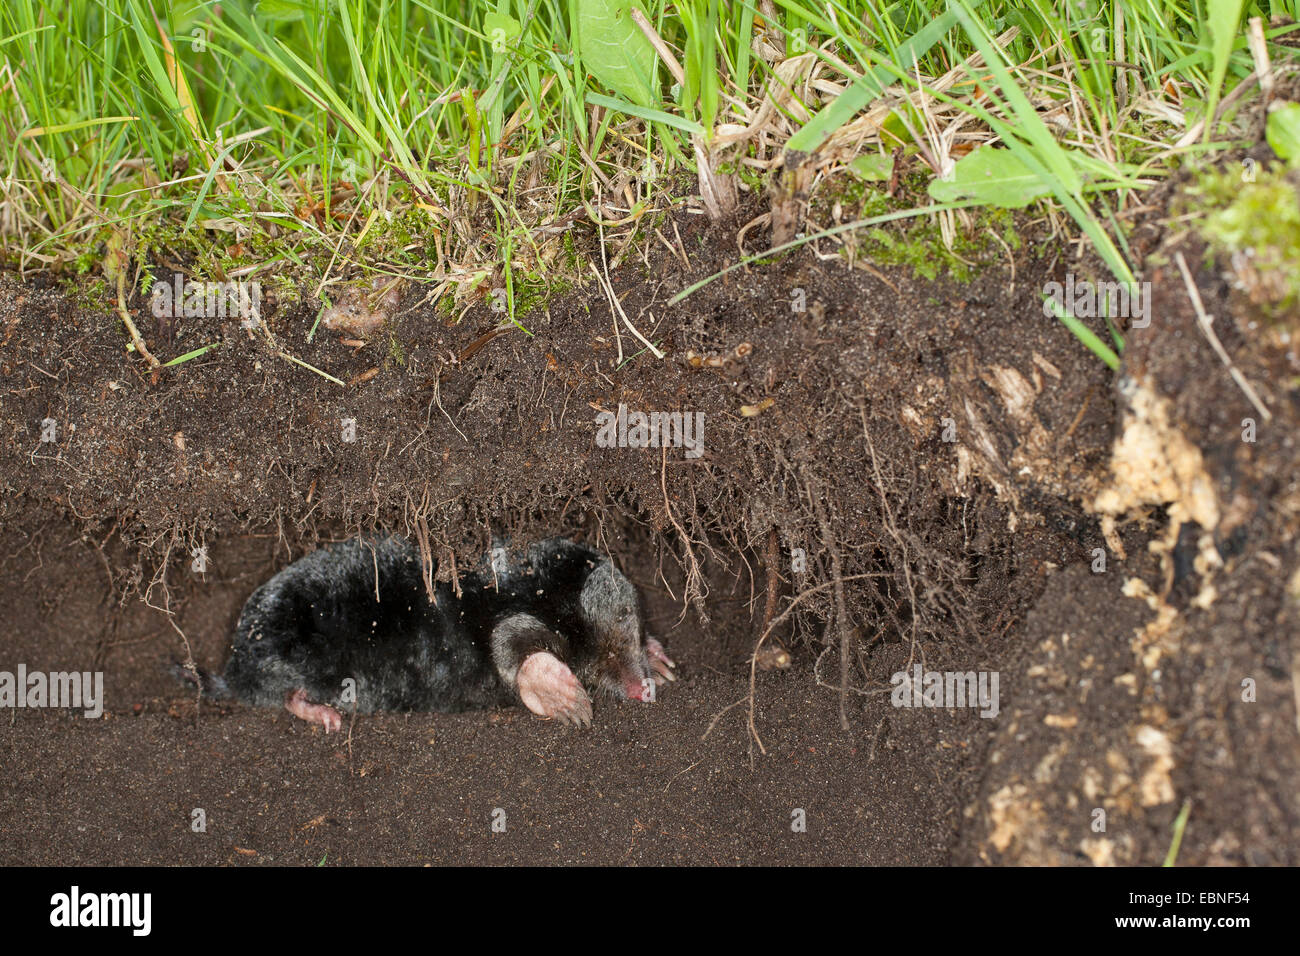 Taupe taupe commun européen, nord, mole (Talpa europaea), dans son passage souterrain, Allemagne Banque D'Images